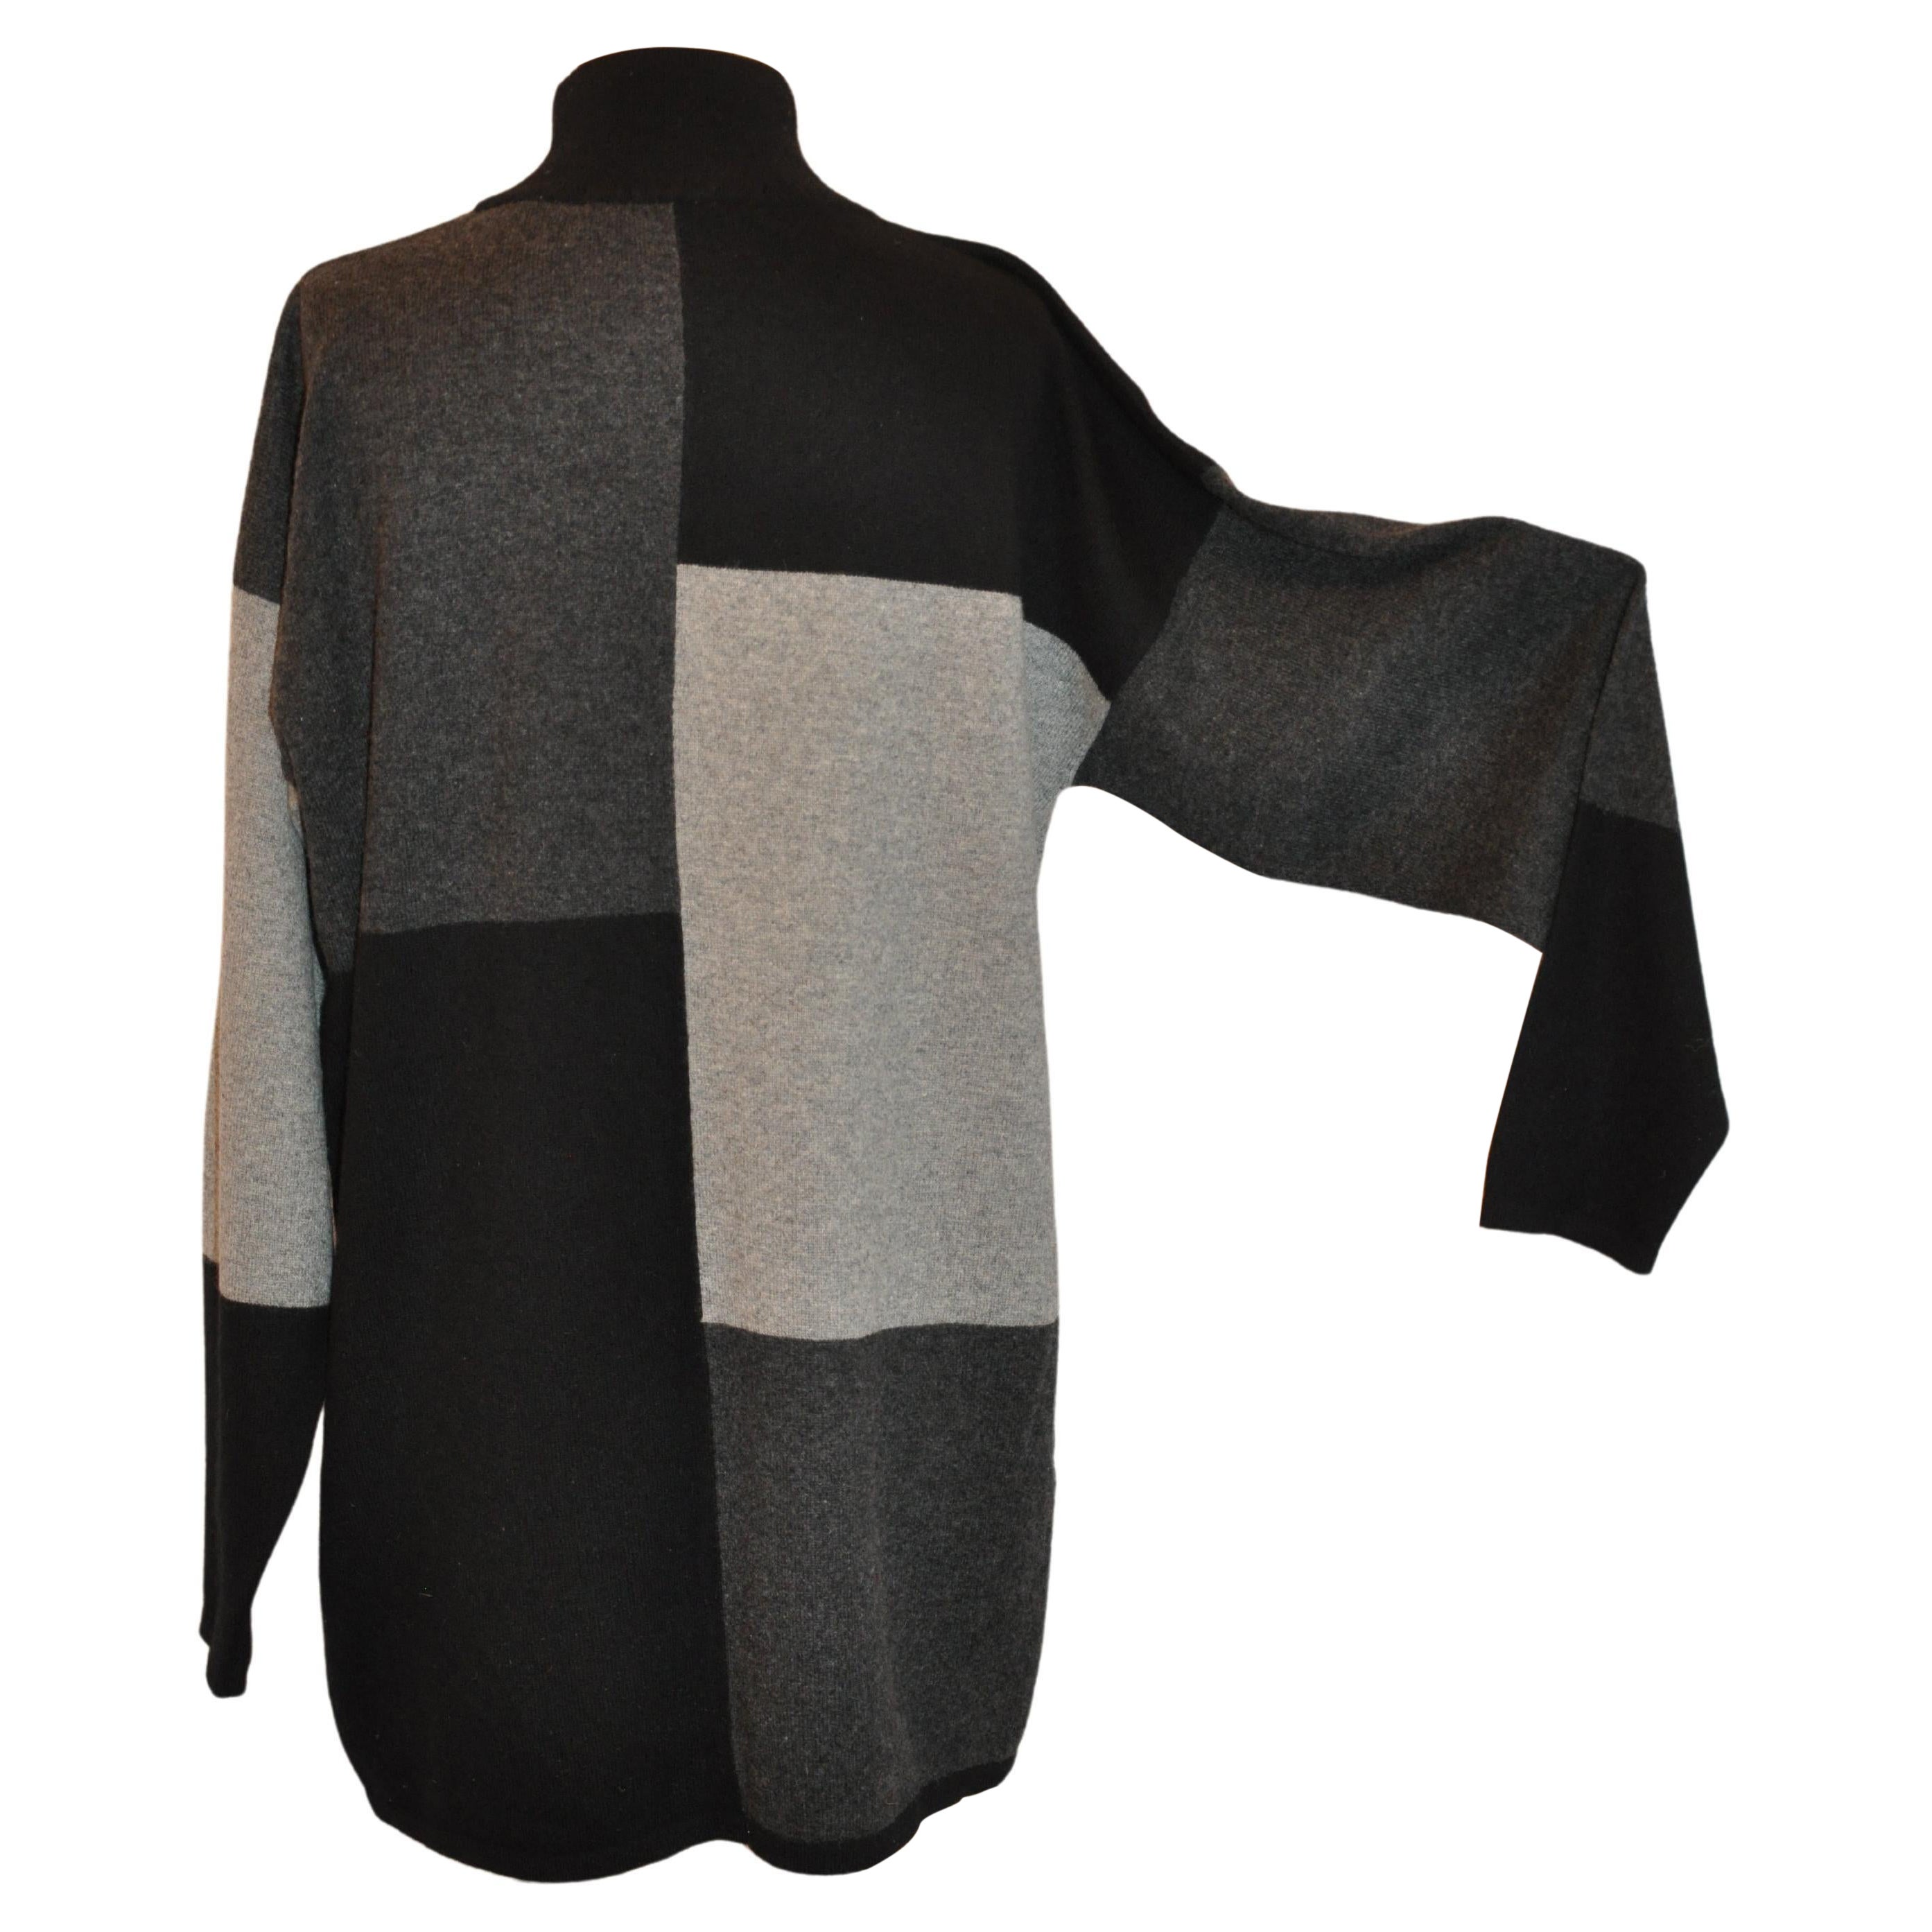 Tunique à 2 poches en cachemire noir, anthracite et gris à blocs de couleurs abstraits